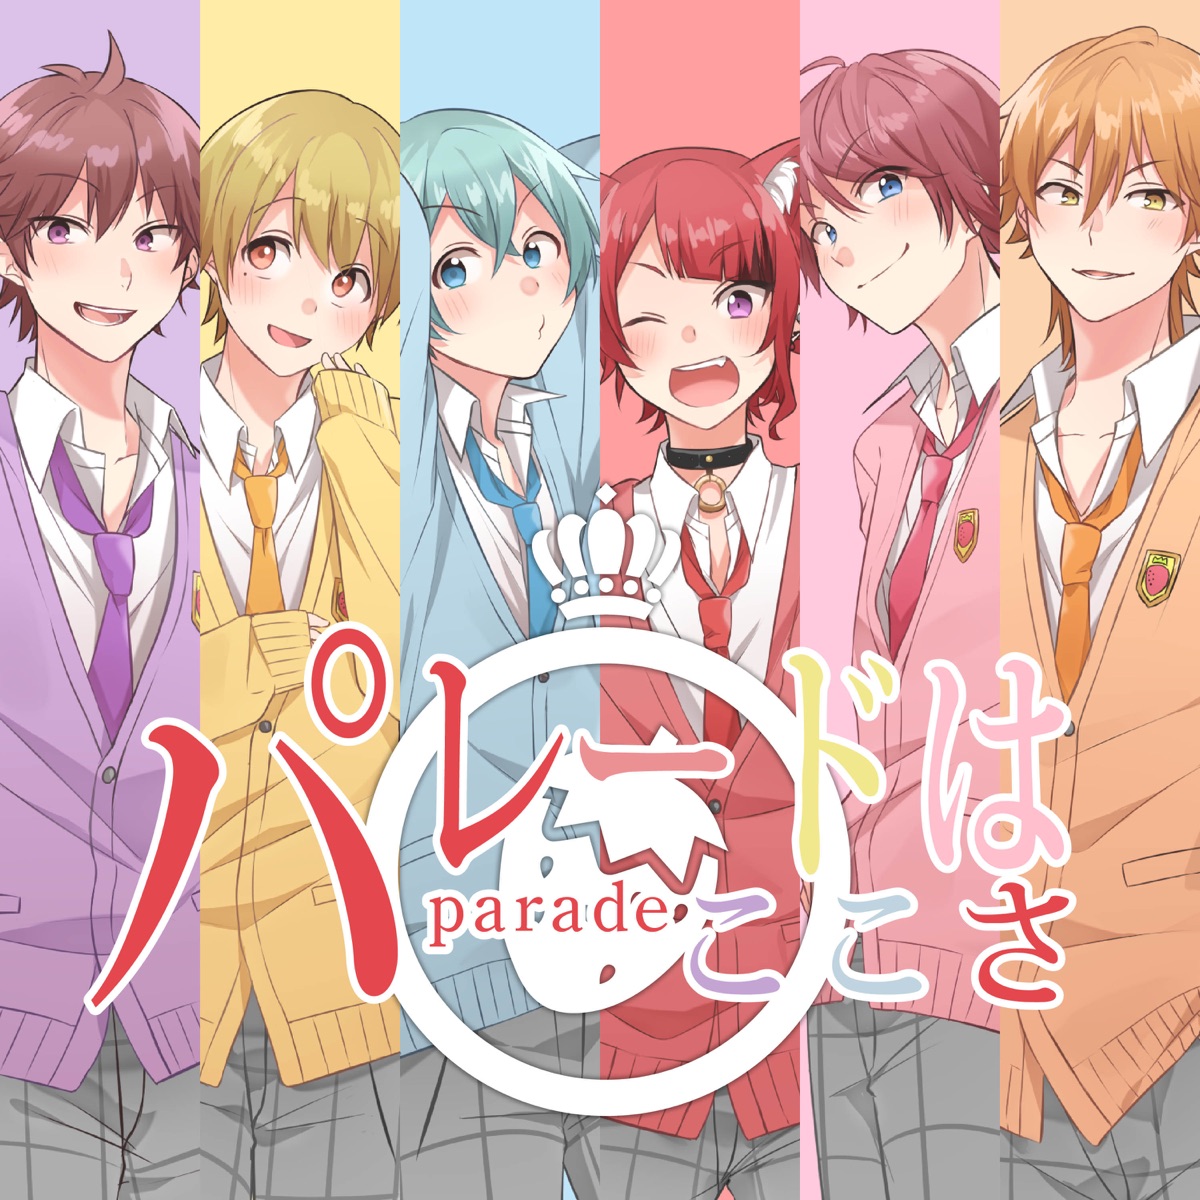 Cover for『Strawberry Prince - Parade wa Koko sa』from the release『Parade wa Koko sa』